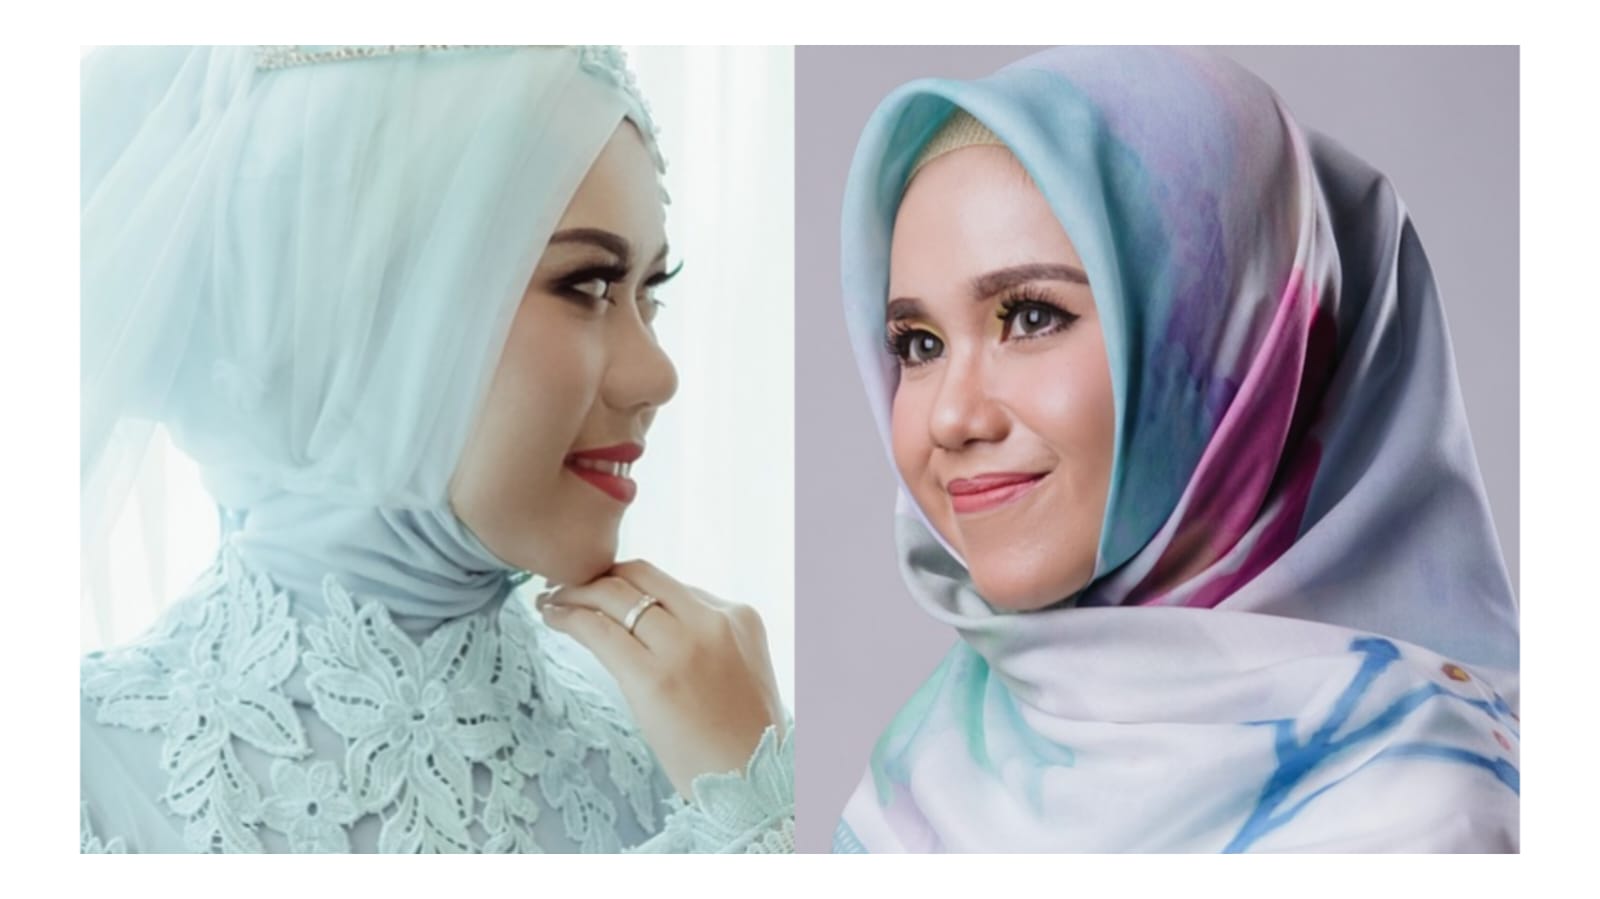 5 Perawatan Kecantikan yang Dilarang Dalam Islam, Nomor 1 Paling Banyak Dilakukan